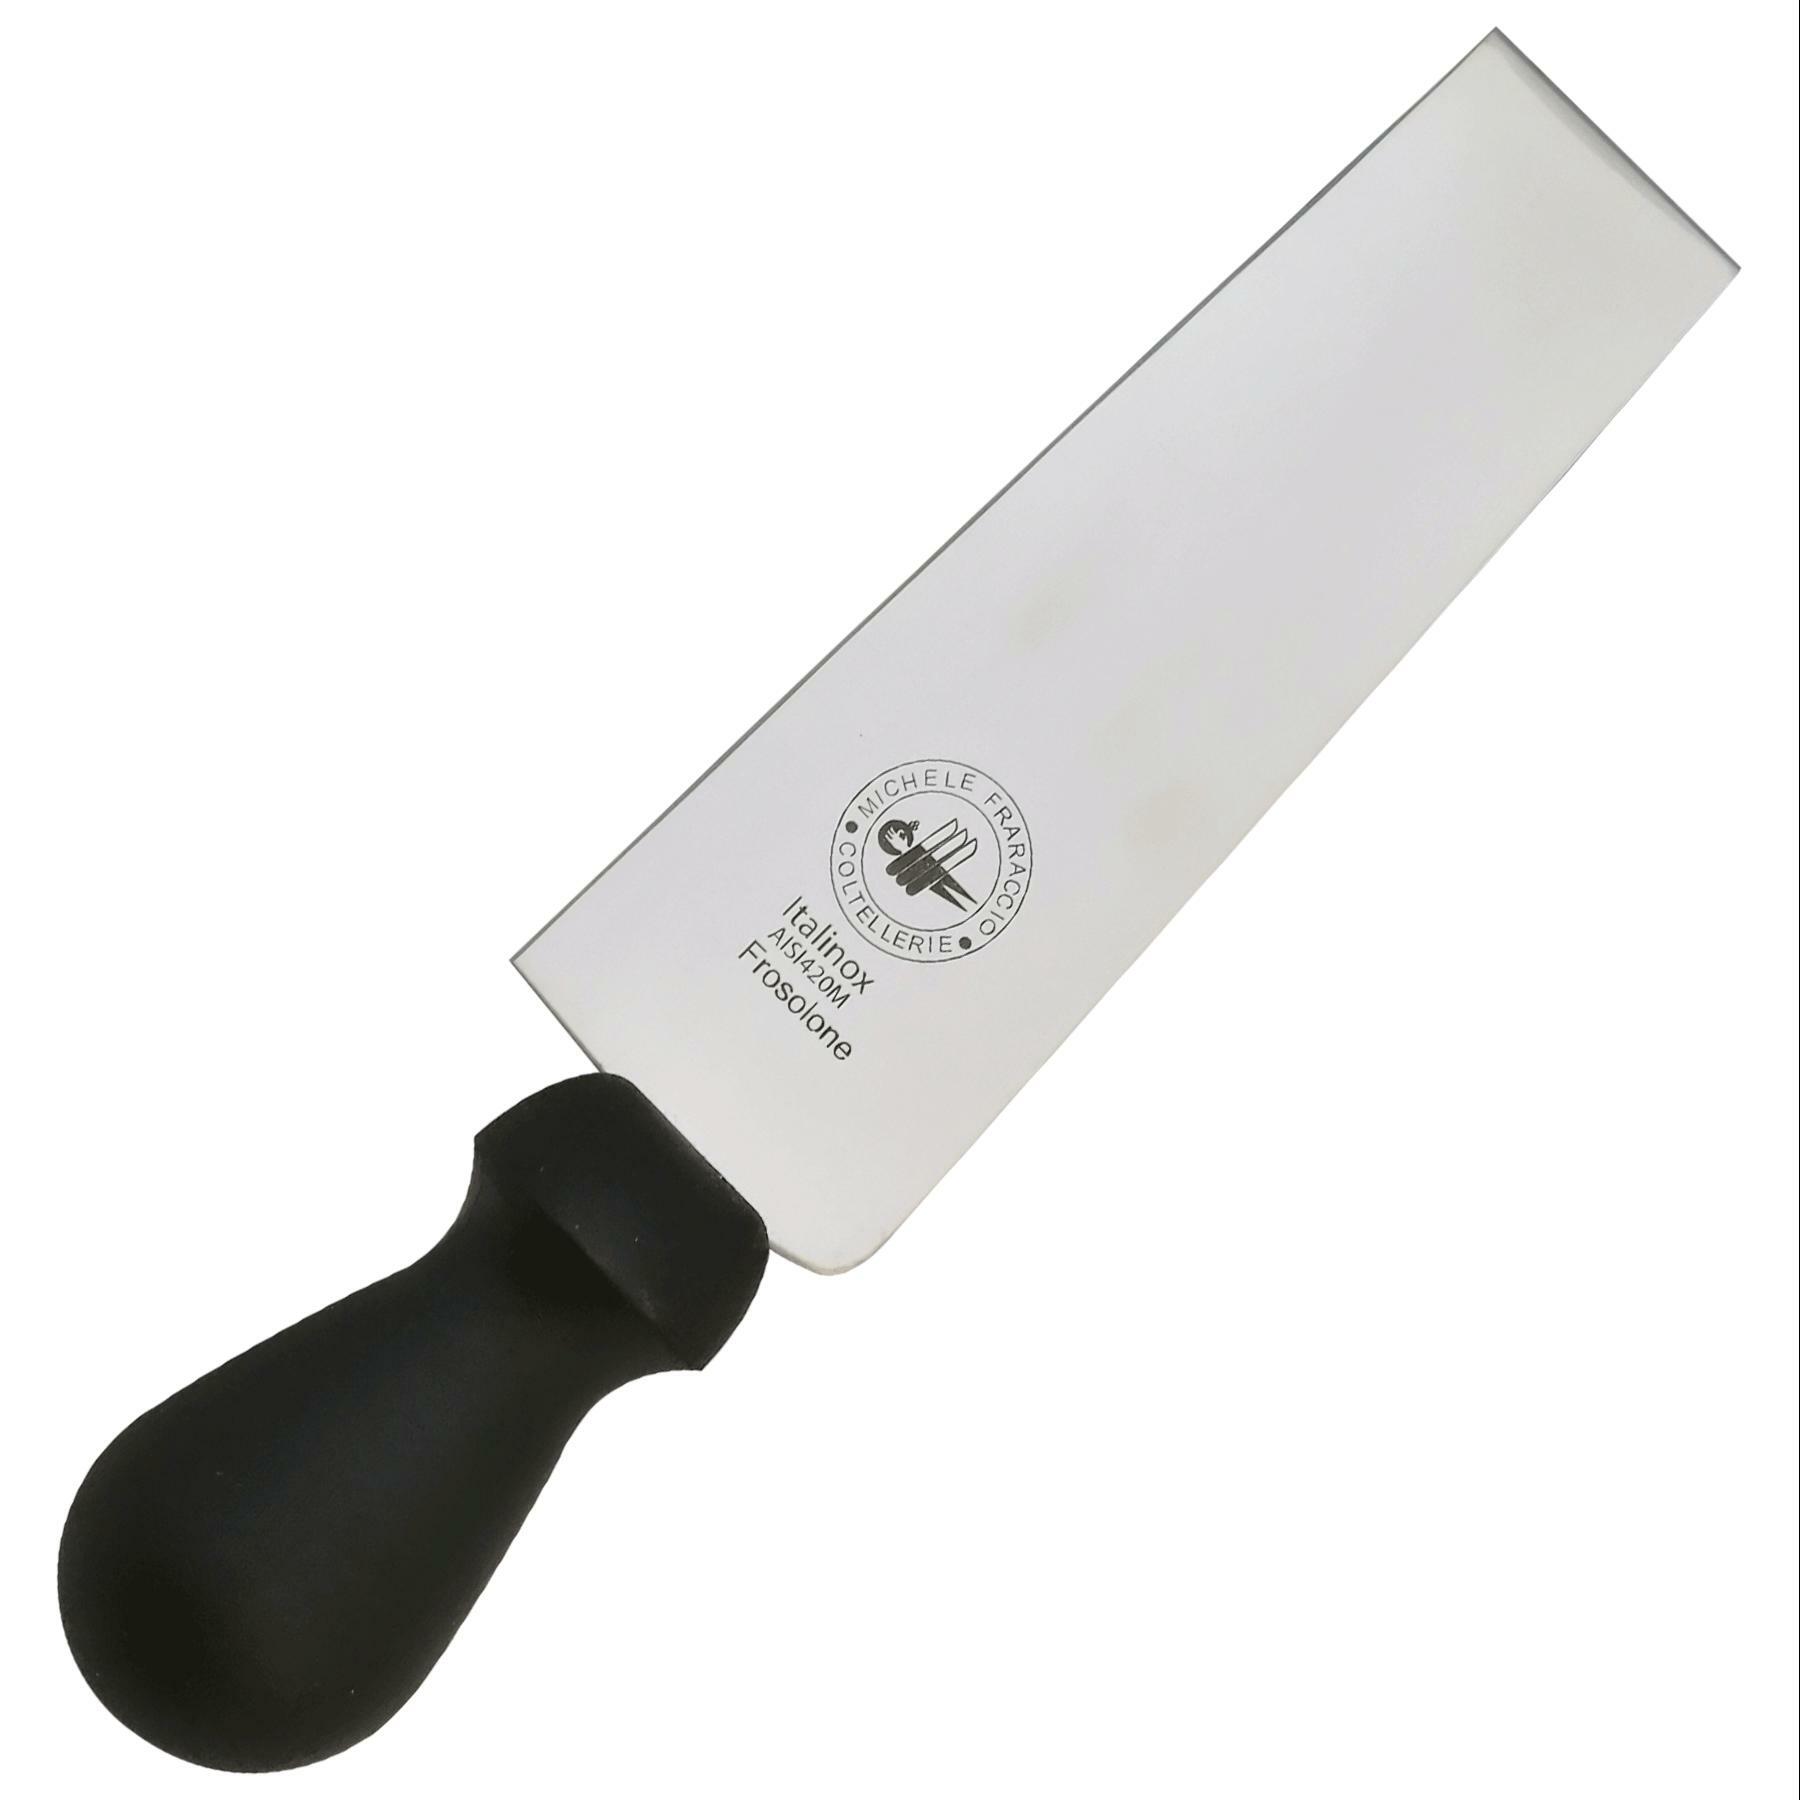 fraraccio coltello formaggio mod. vercelli professionale 14cm